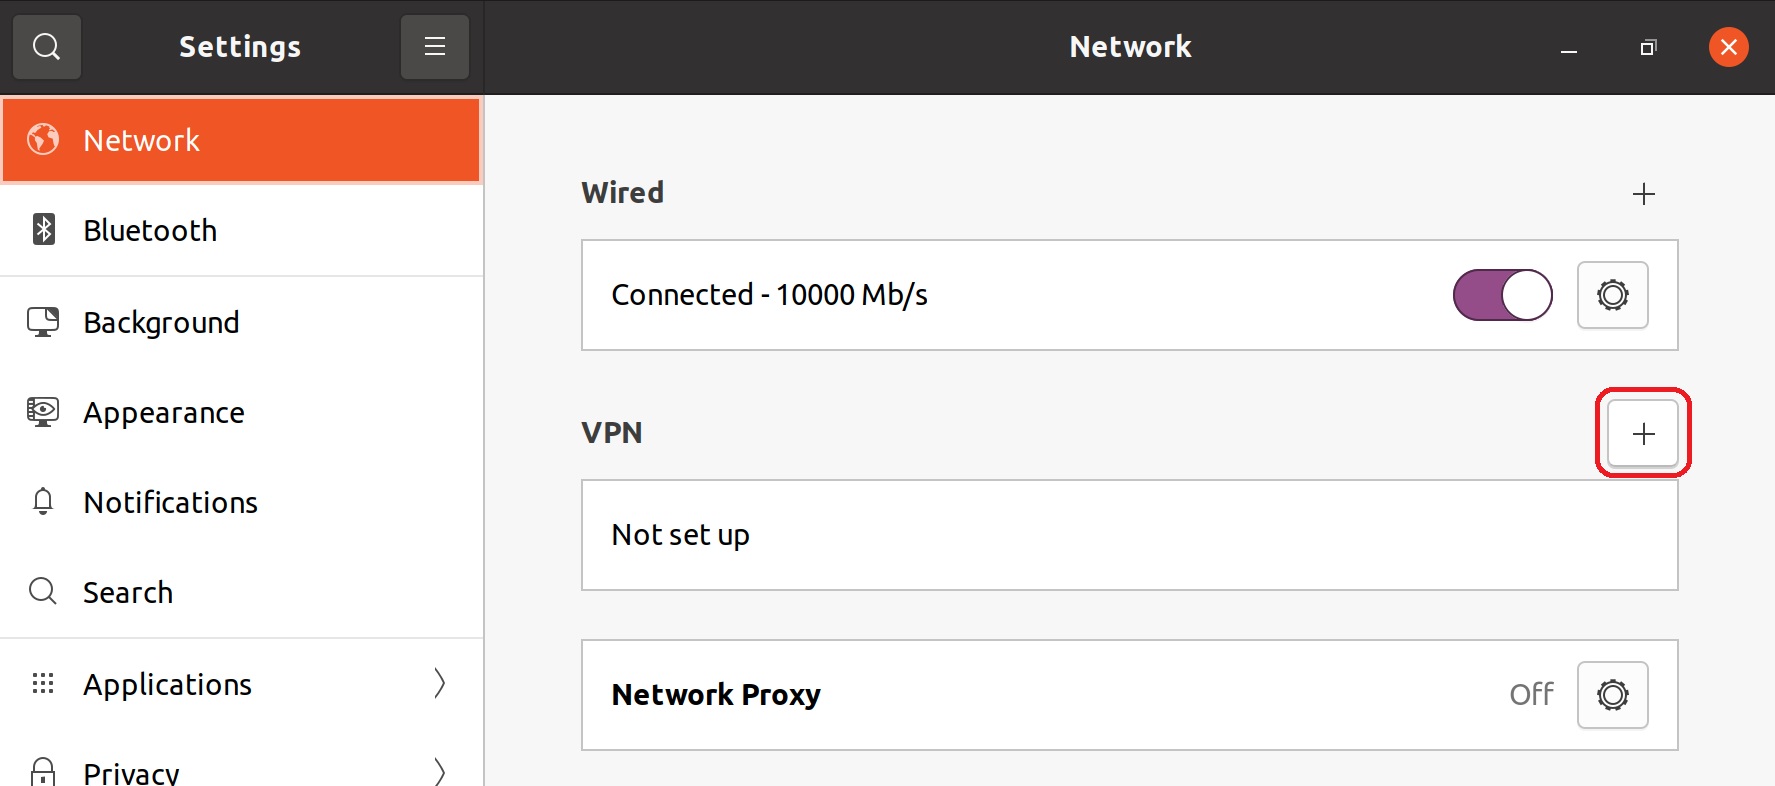 How do I set up VPN in Linux?